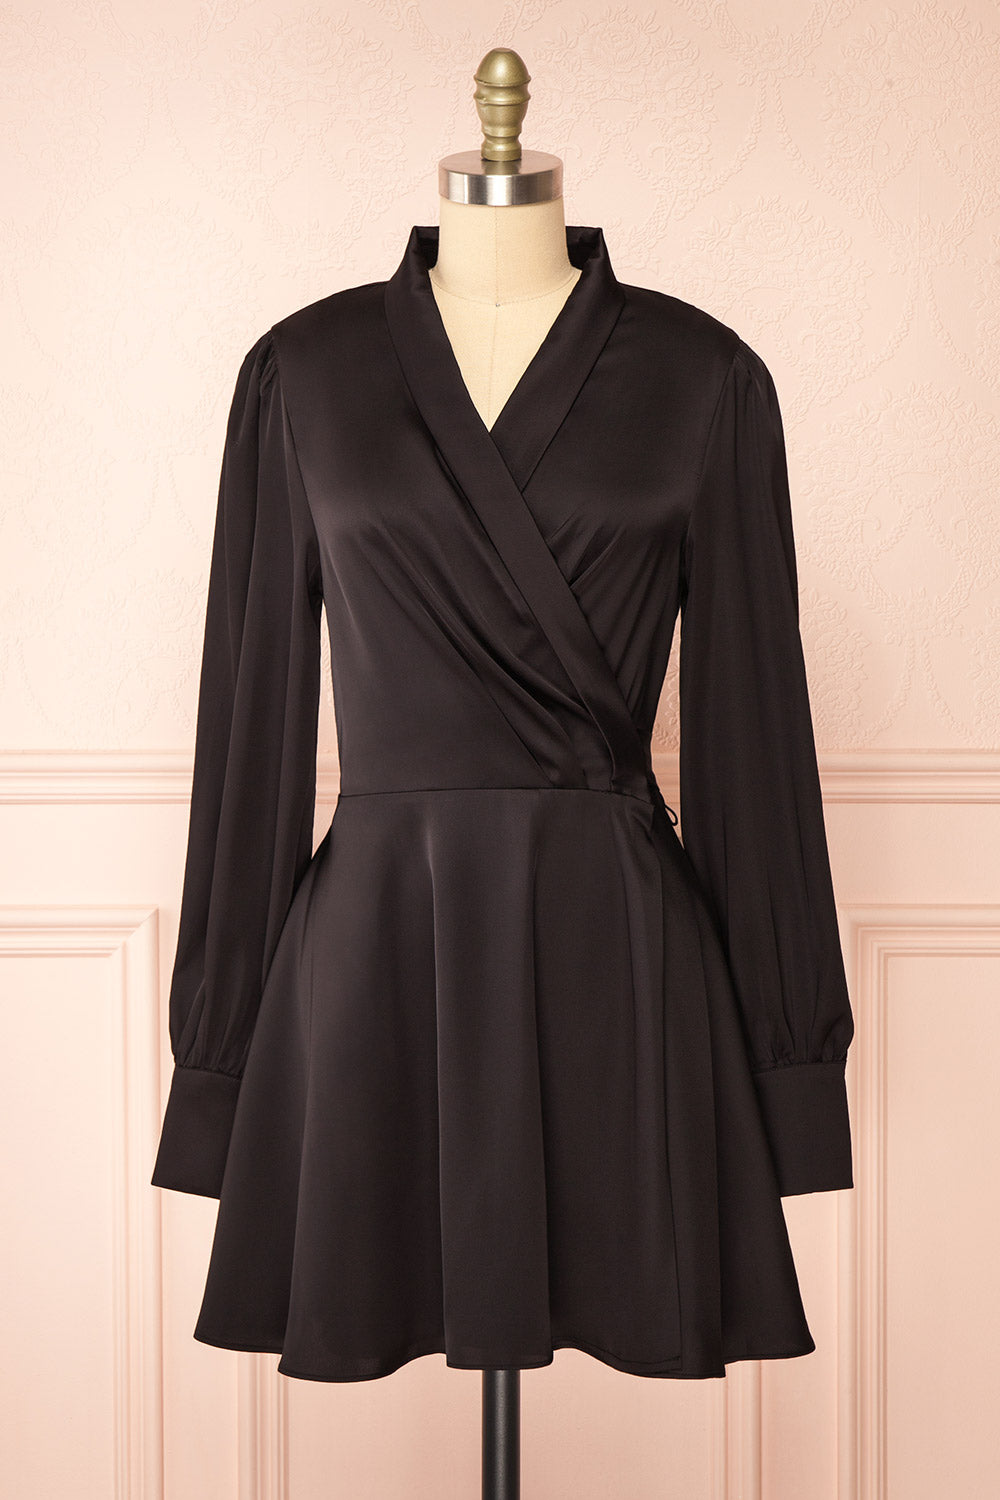 Felestine Black Short Satin Wrap Dress | Boutique 1861 front view